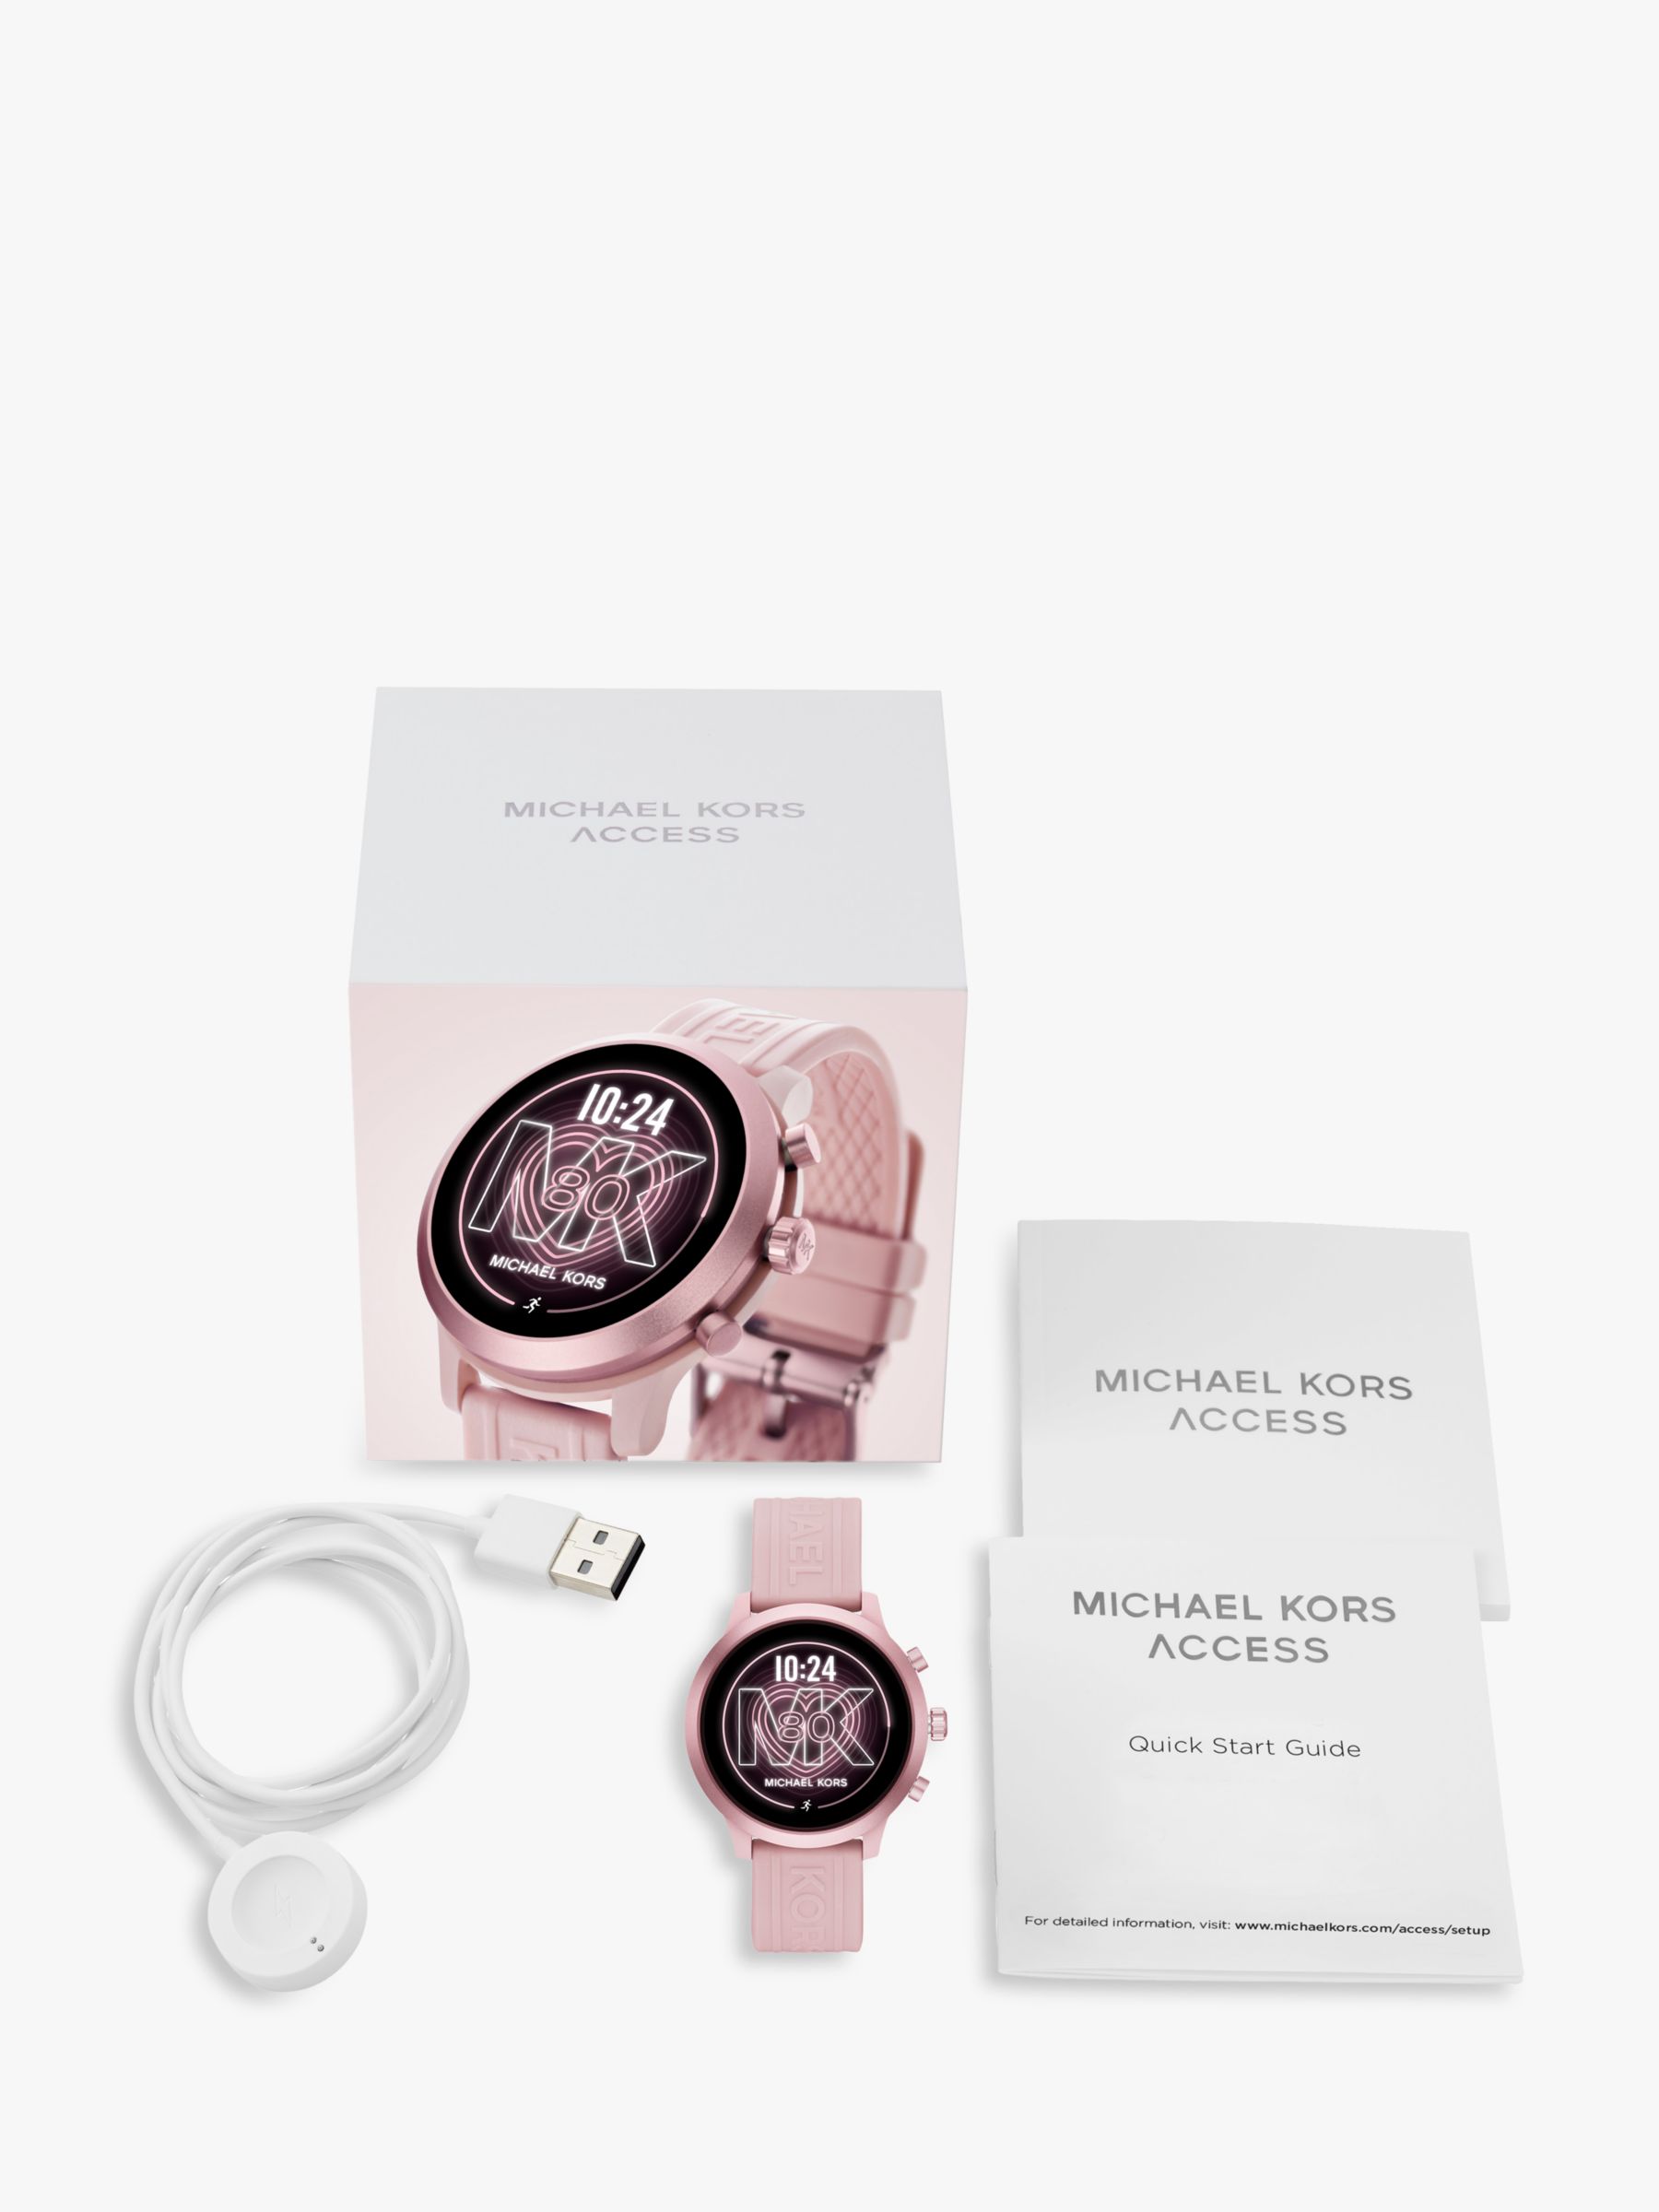 michael kors women's smartwatch rose gold